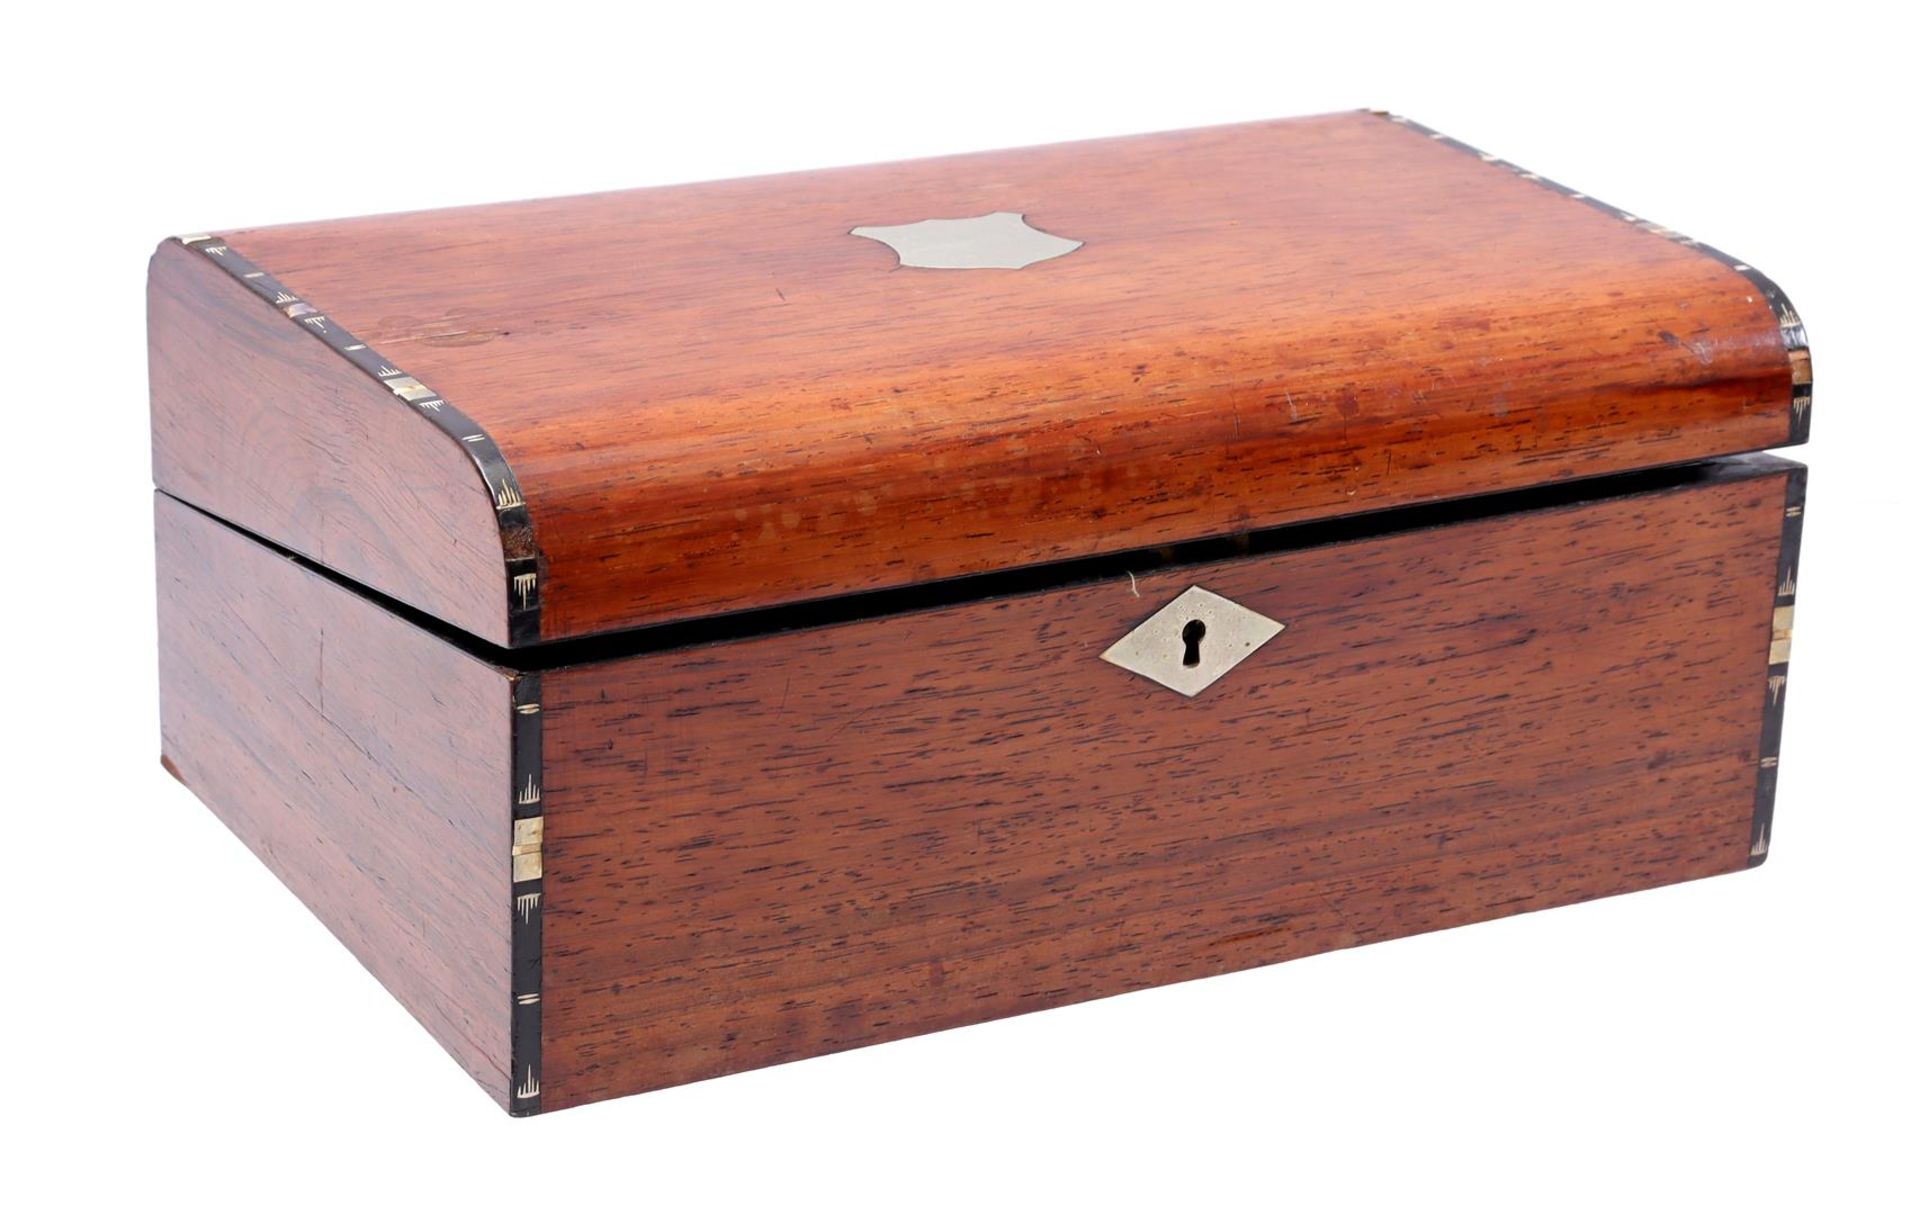 Rosewood veneer writing box